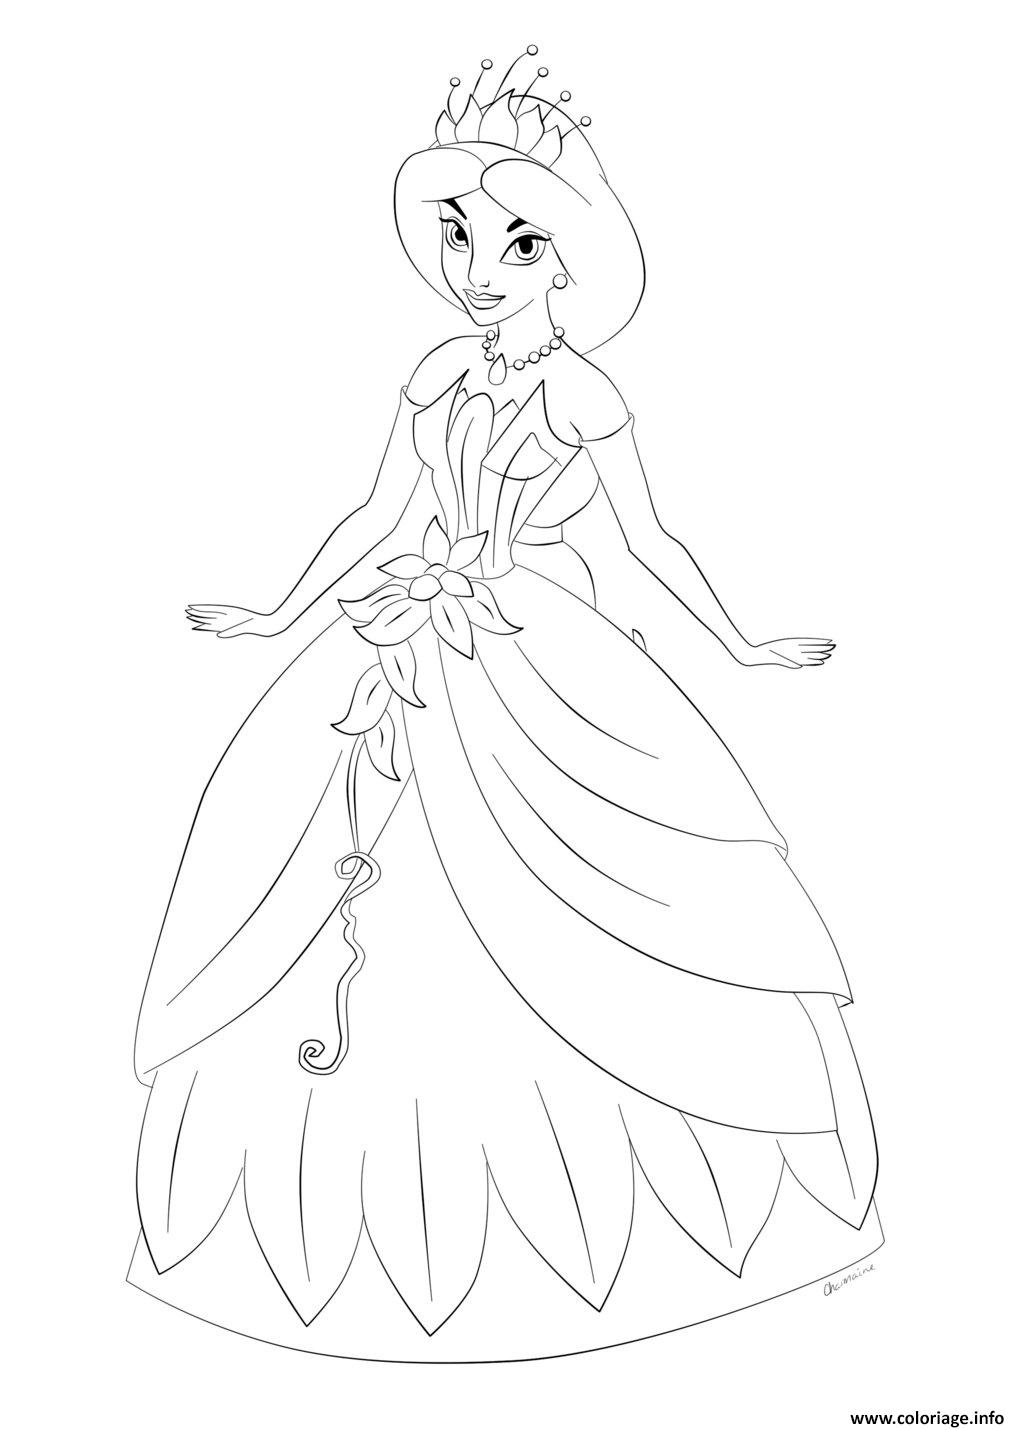 Dessin princesse disney jasmine et sa magnifique robe de bal Coloriage Gratuit à Imprimer